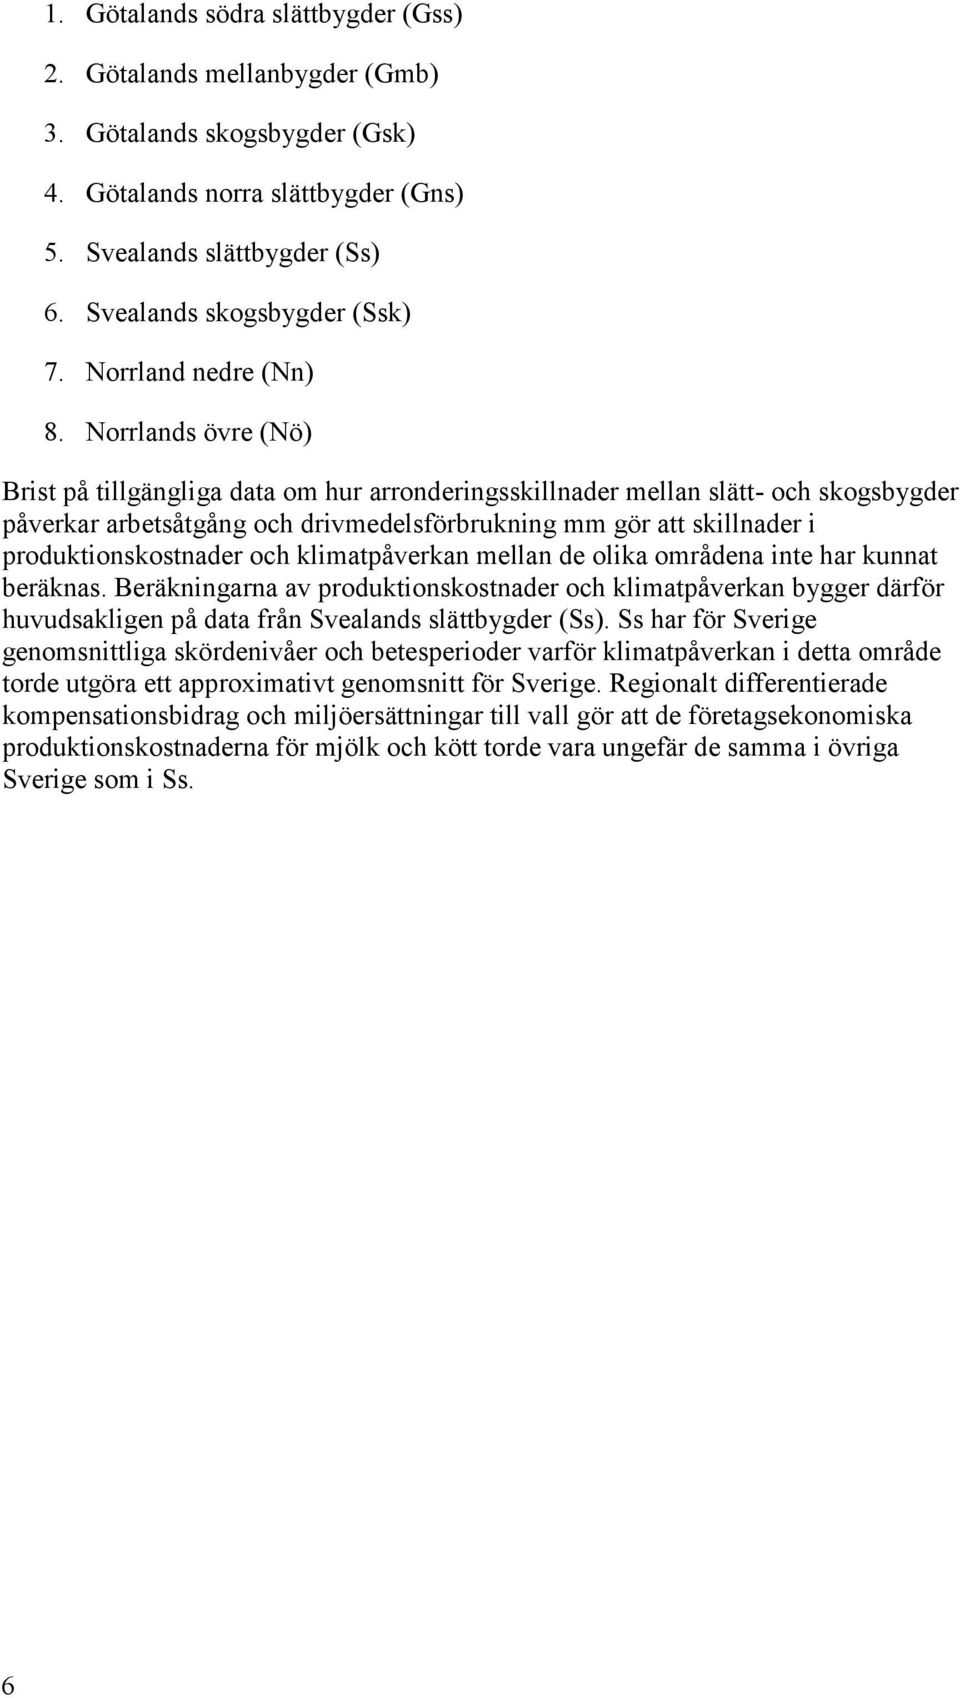 Norrlands övre (Nö) Brist på tillgängliga data om hur arronderingsskillnader mellan slätt- och skogsbygder påverkar arbetsåtgång och drivmedelsförbrukning mm gör att skillnader i produktionskostnader